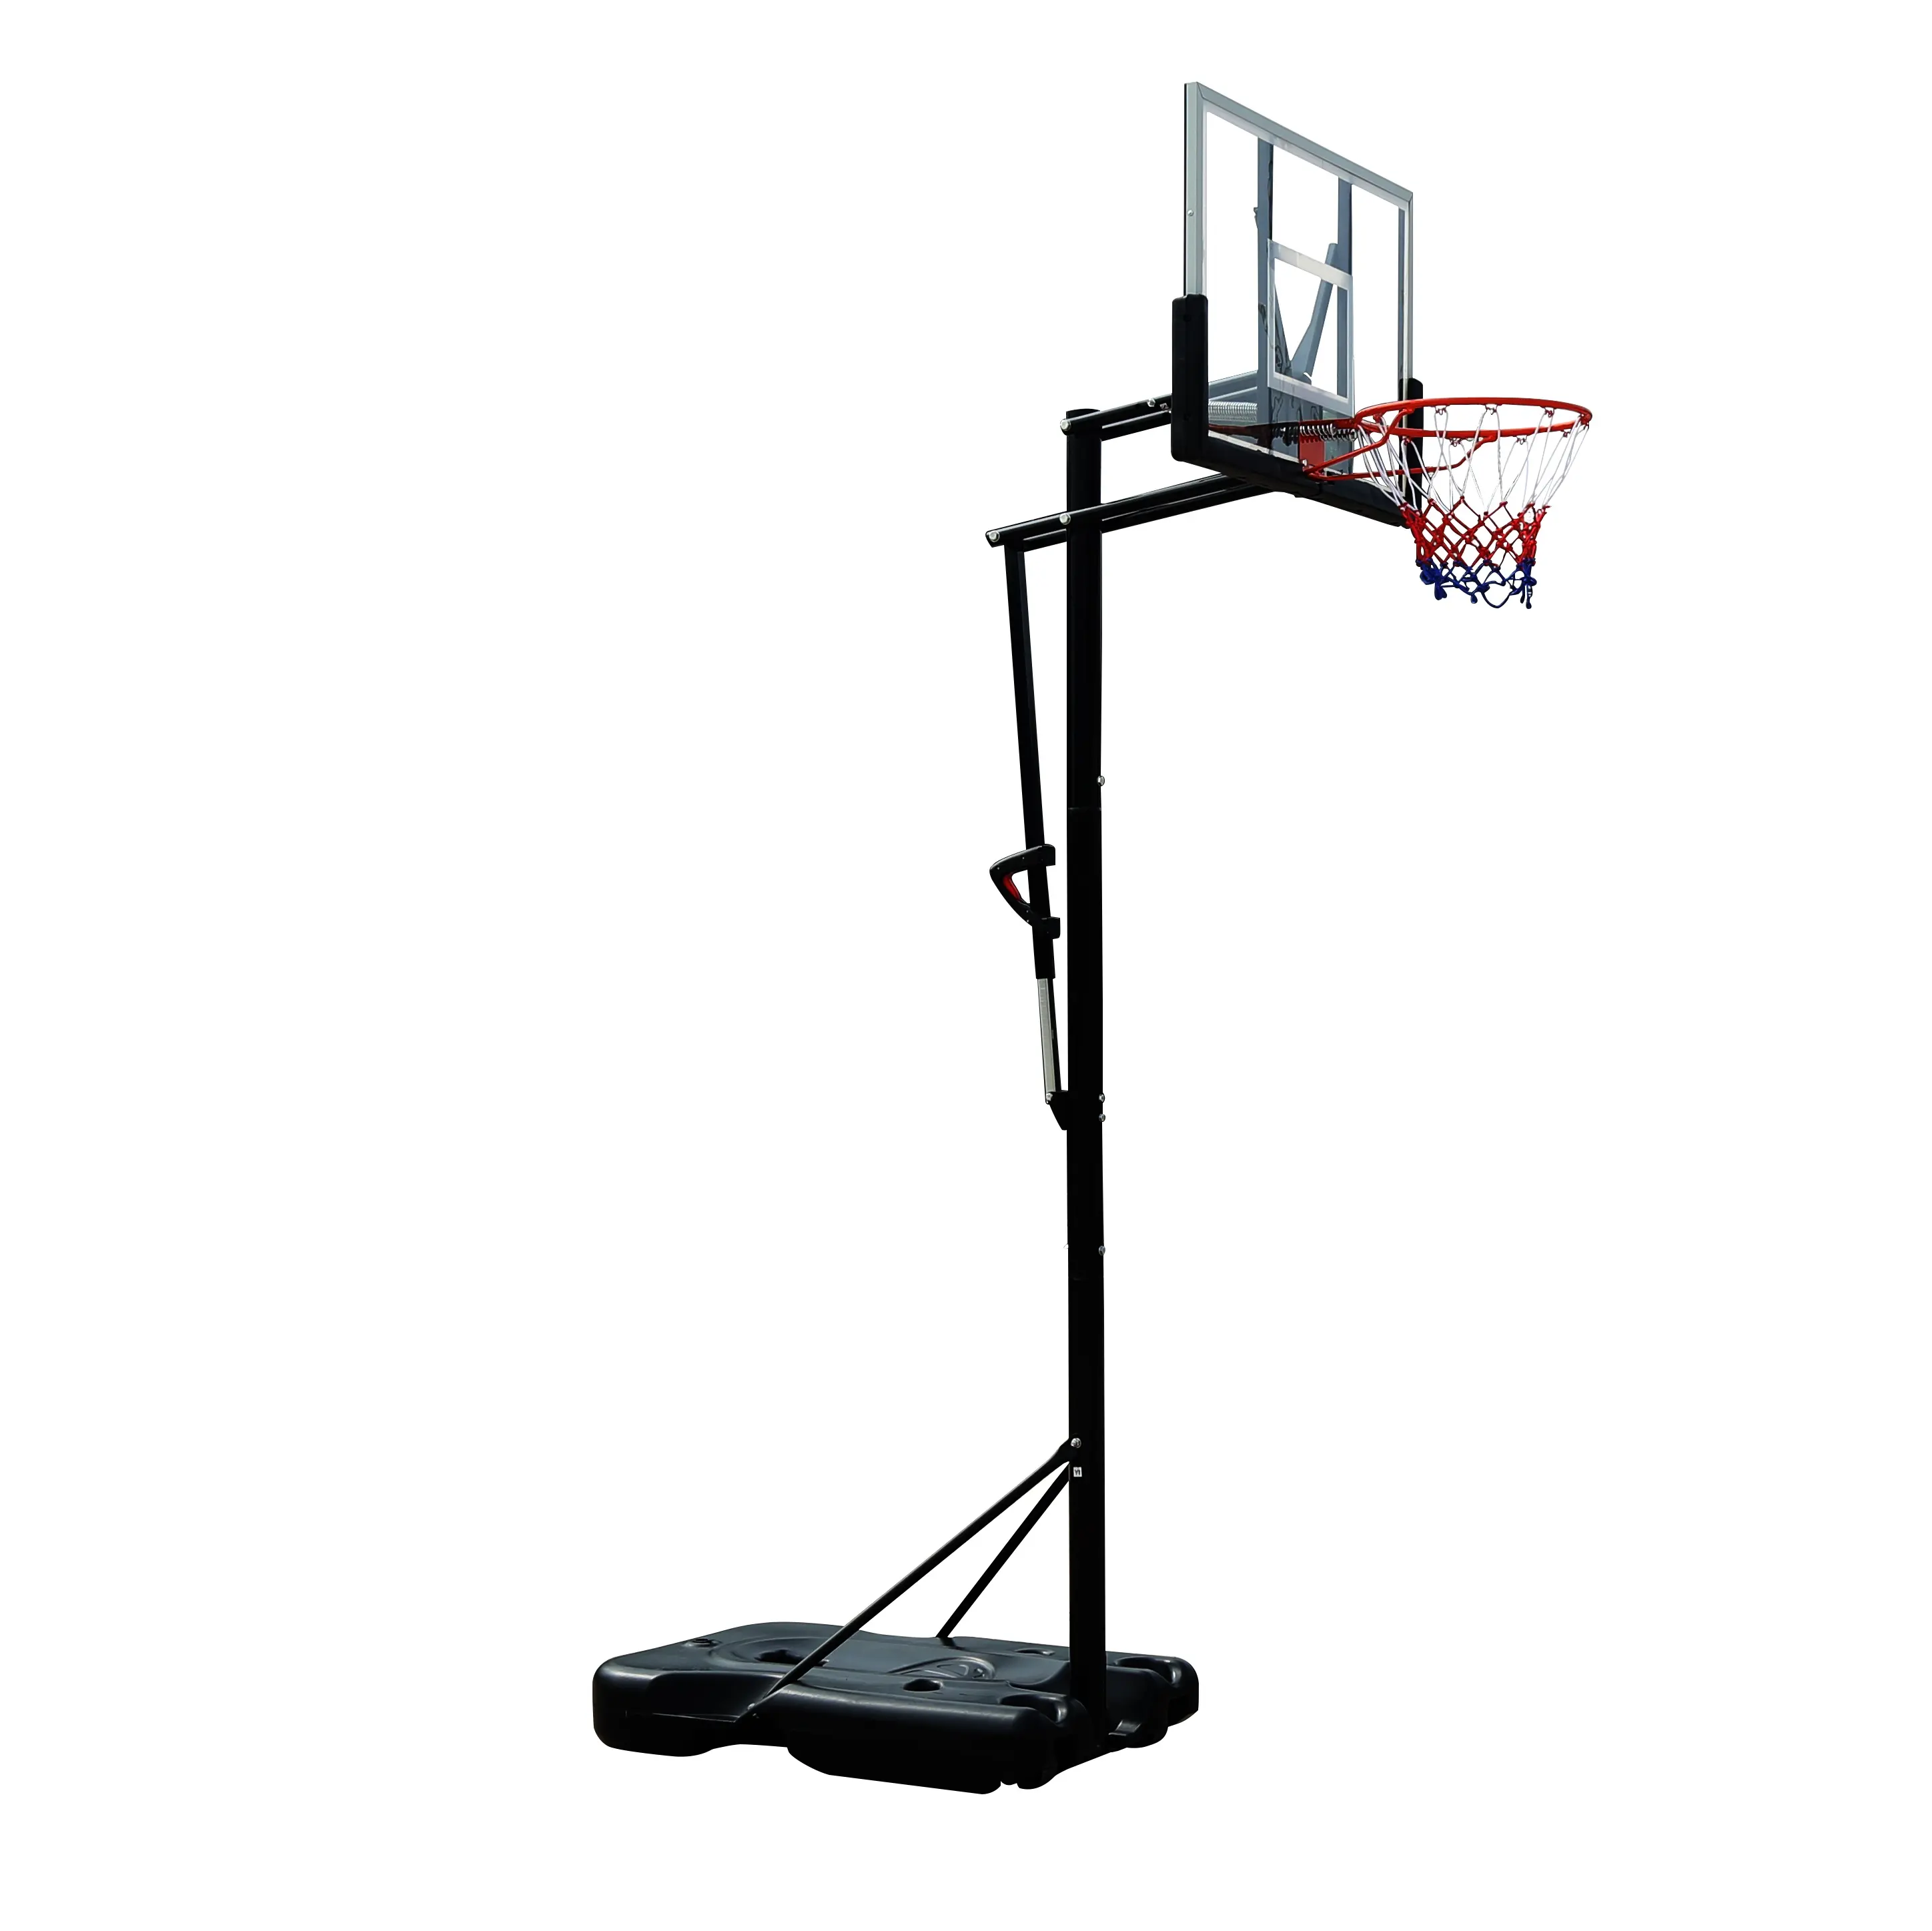 Suministro de fábrica de alta calidad portátil ajustable al aire libre móvil aro de baloncesto soporte de baloncesto